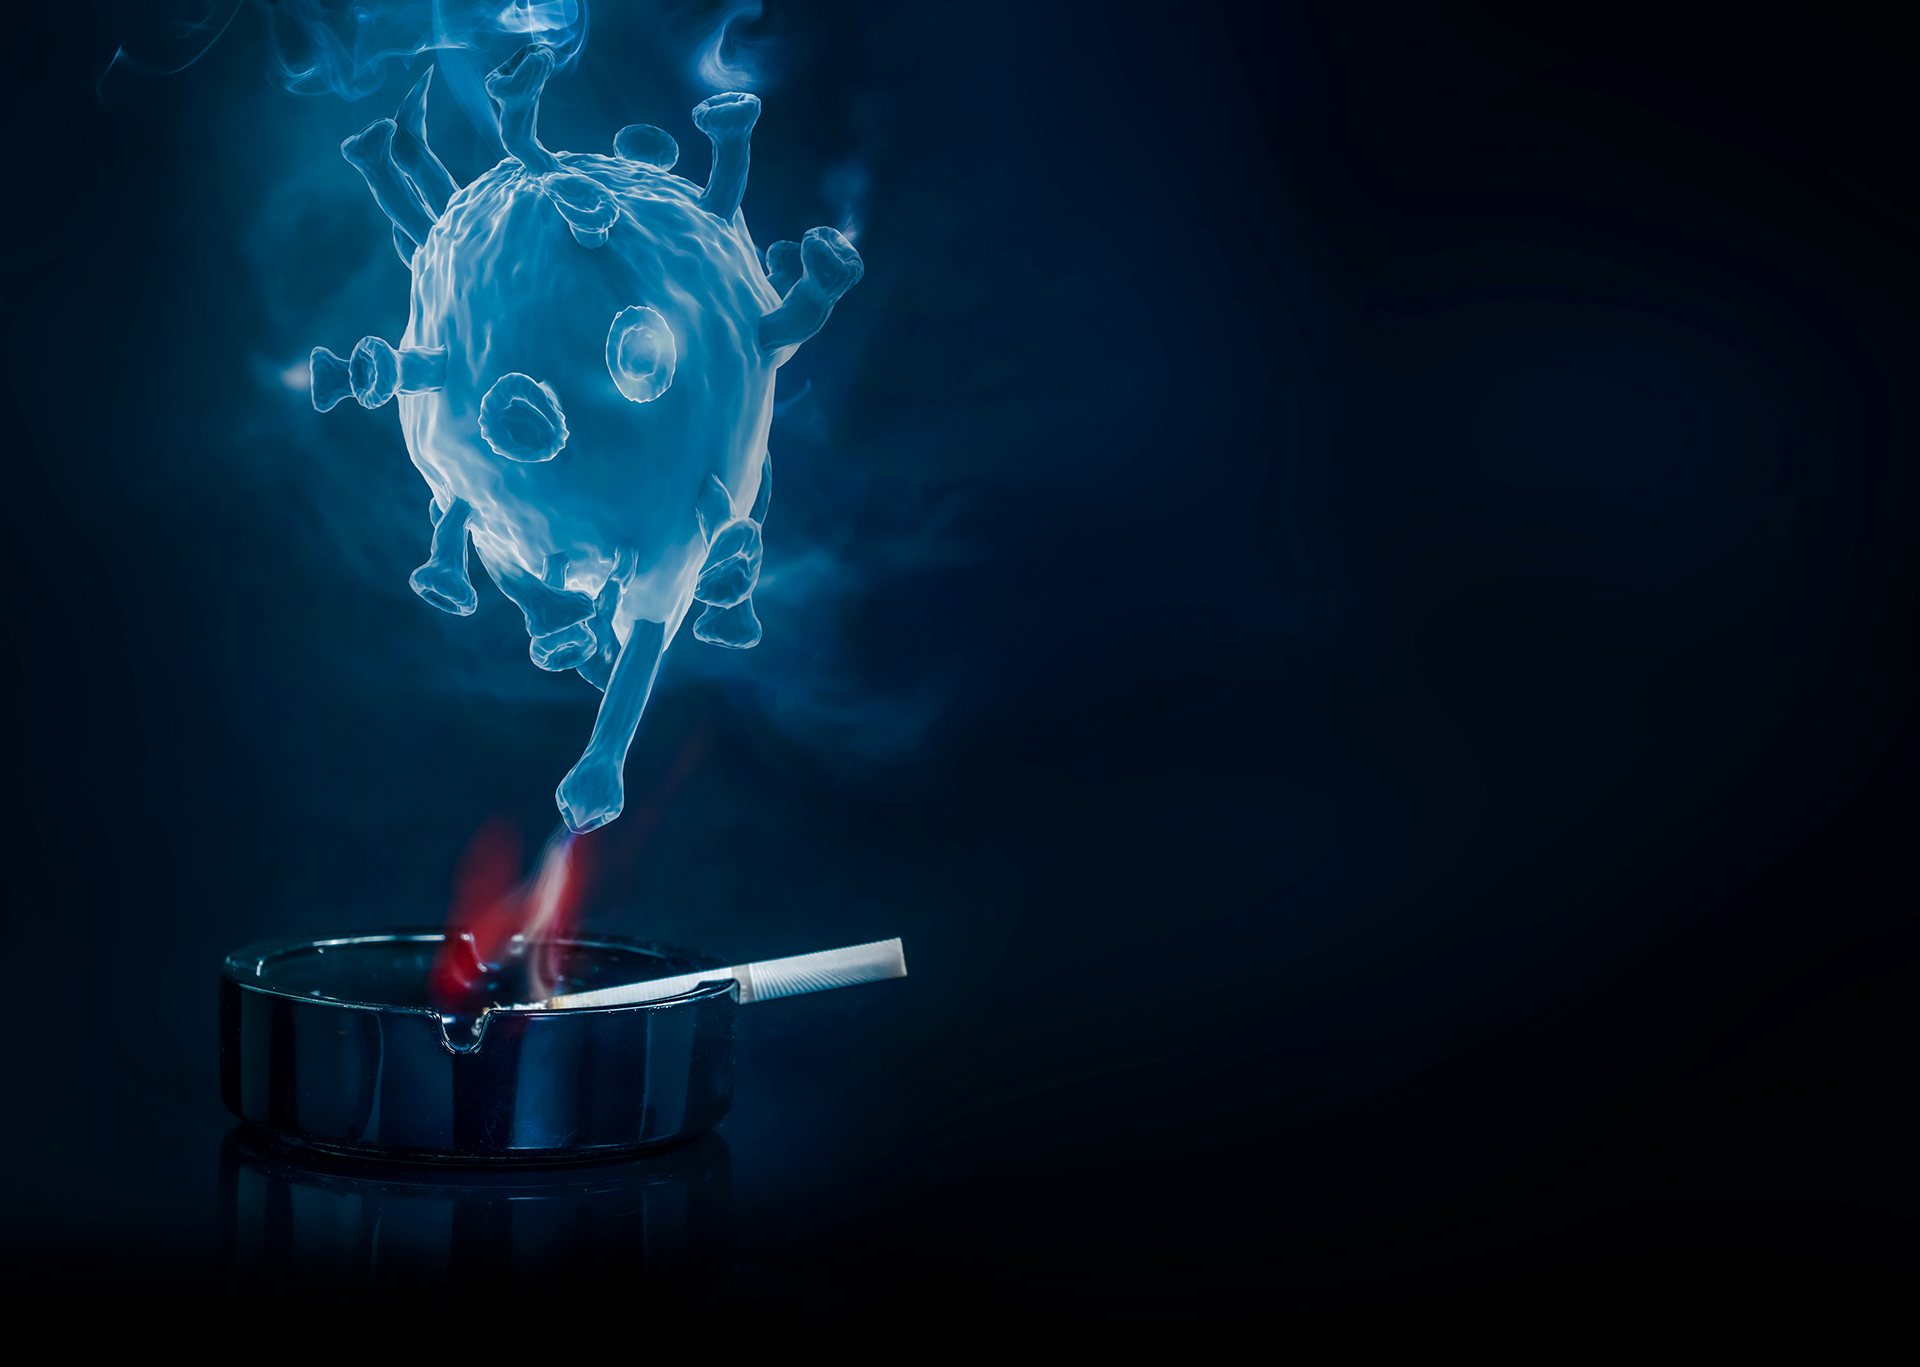 Fumar estaría relacionado con una progesión negativa y resultados adversos en personas que contraen esta enfermedad (Shutterstock.com)